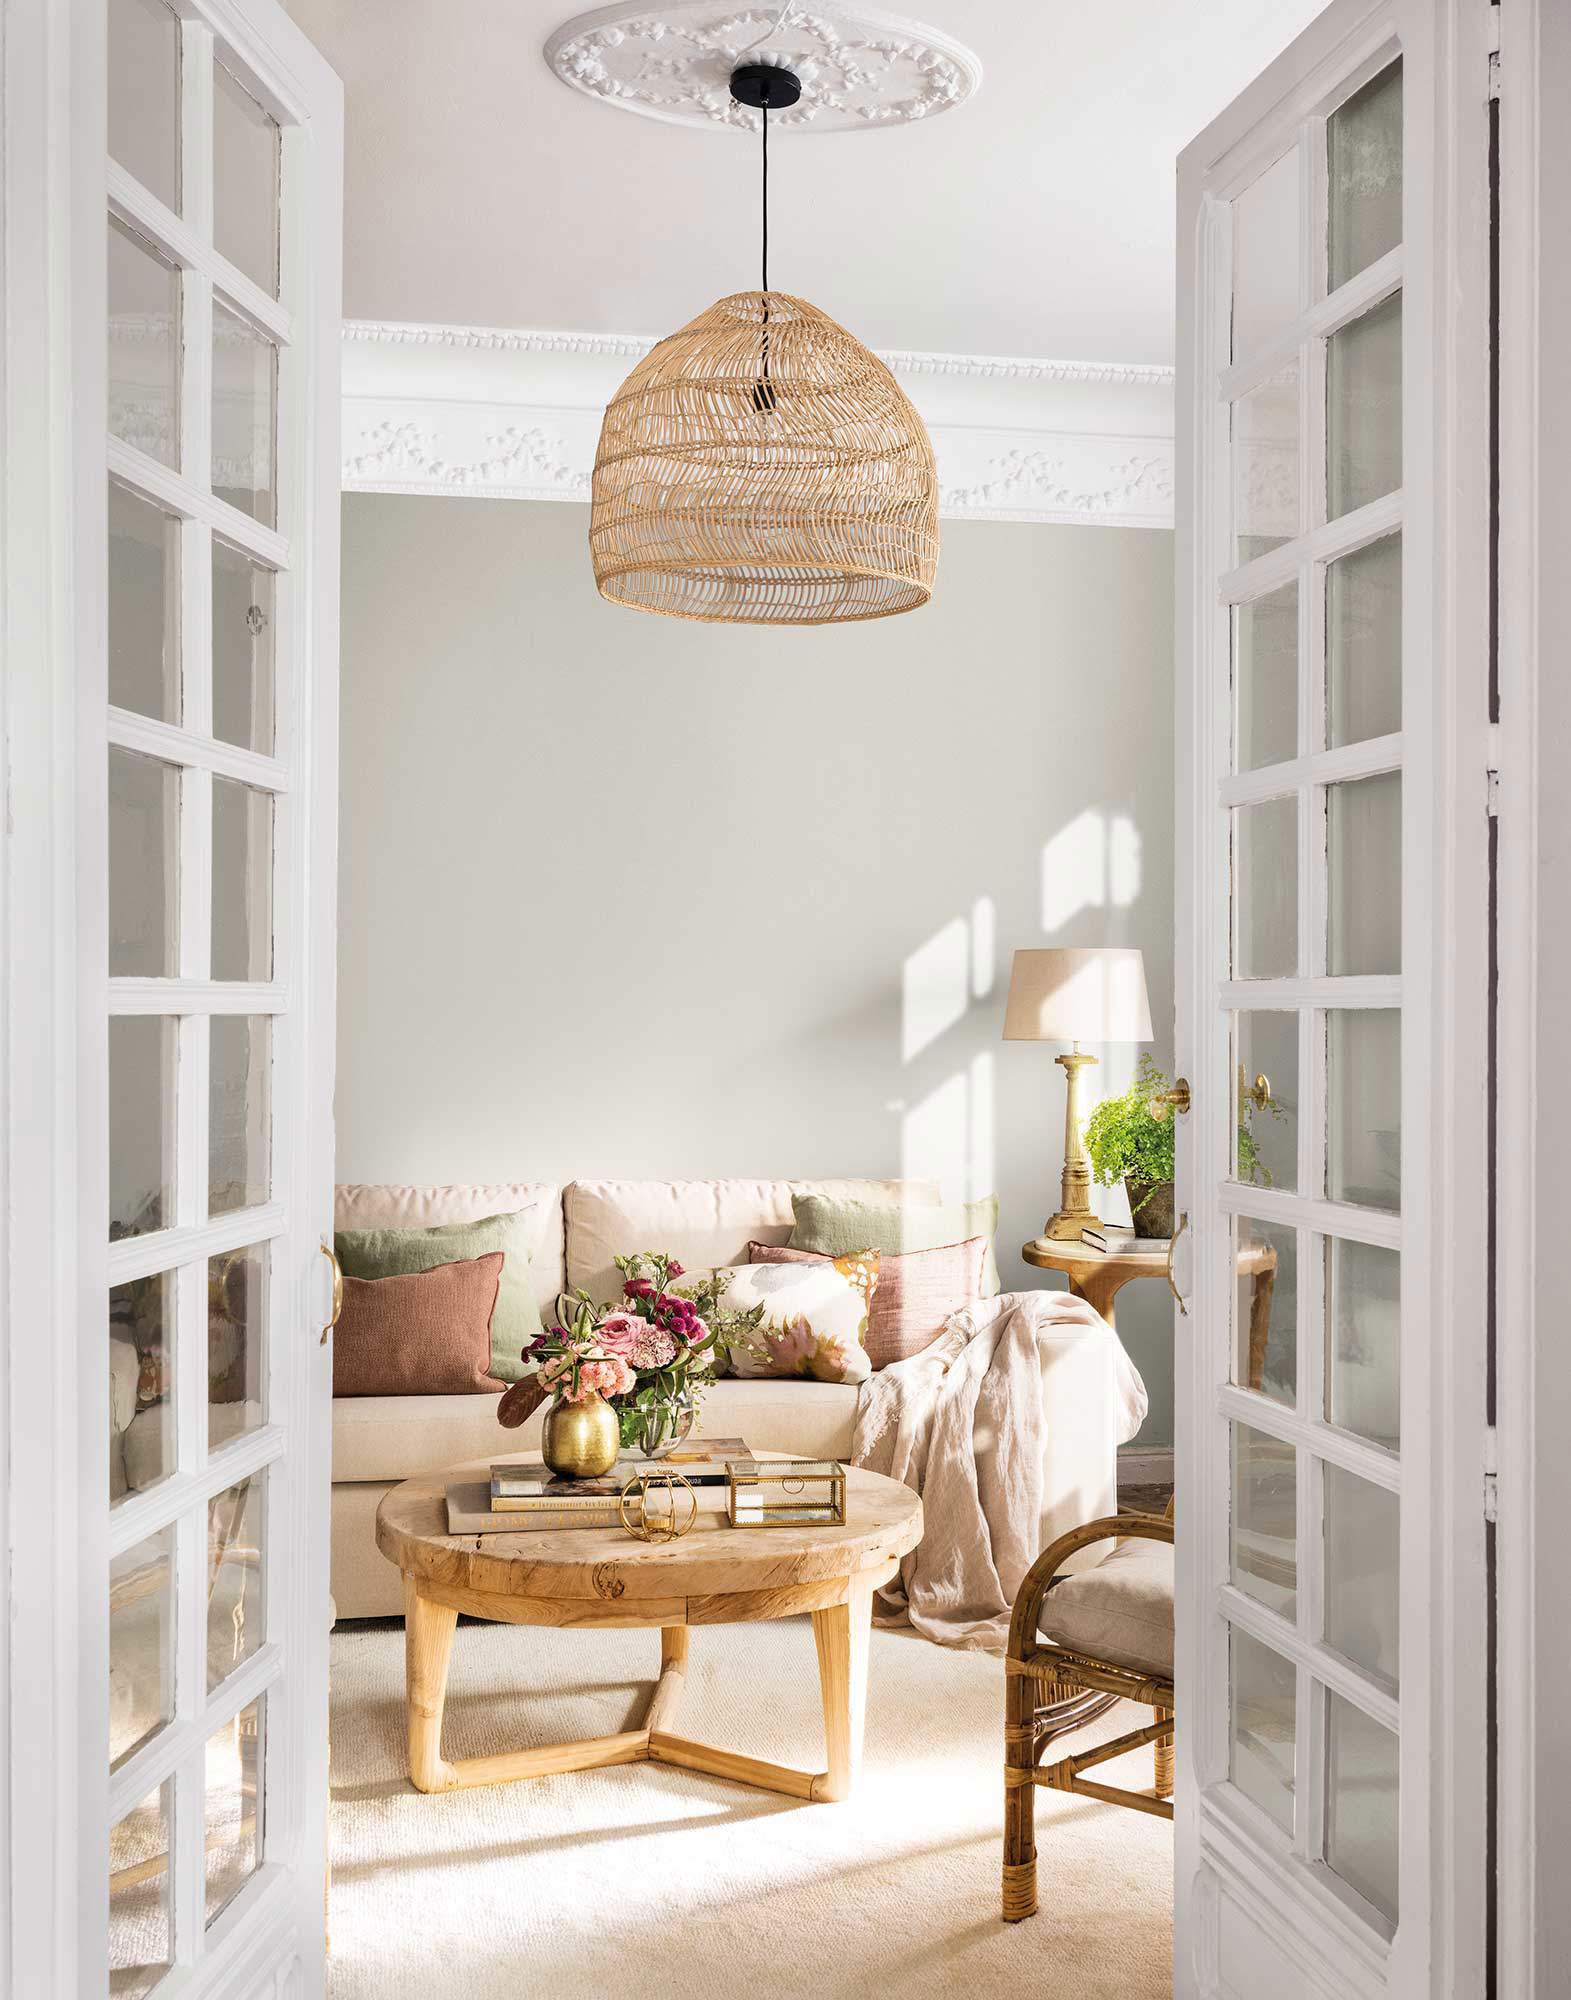 Salón decorado en tonos neutros con muebles de madera y detalles en fibra